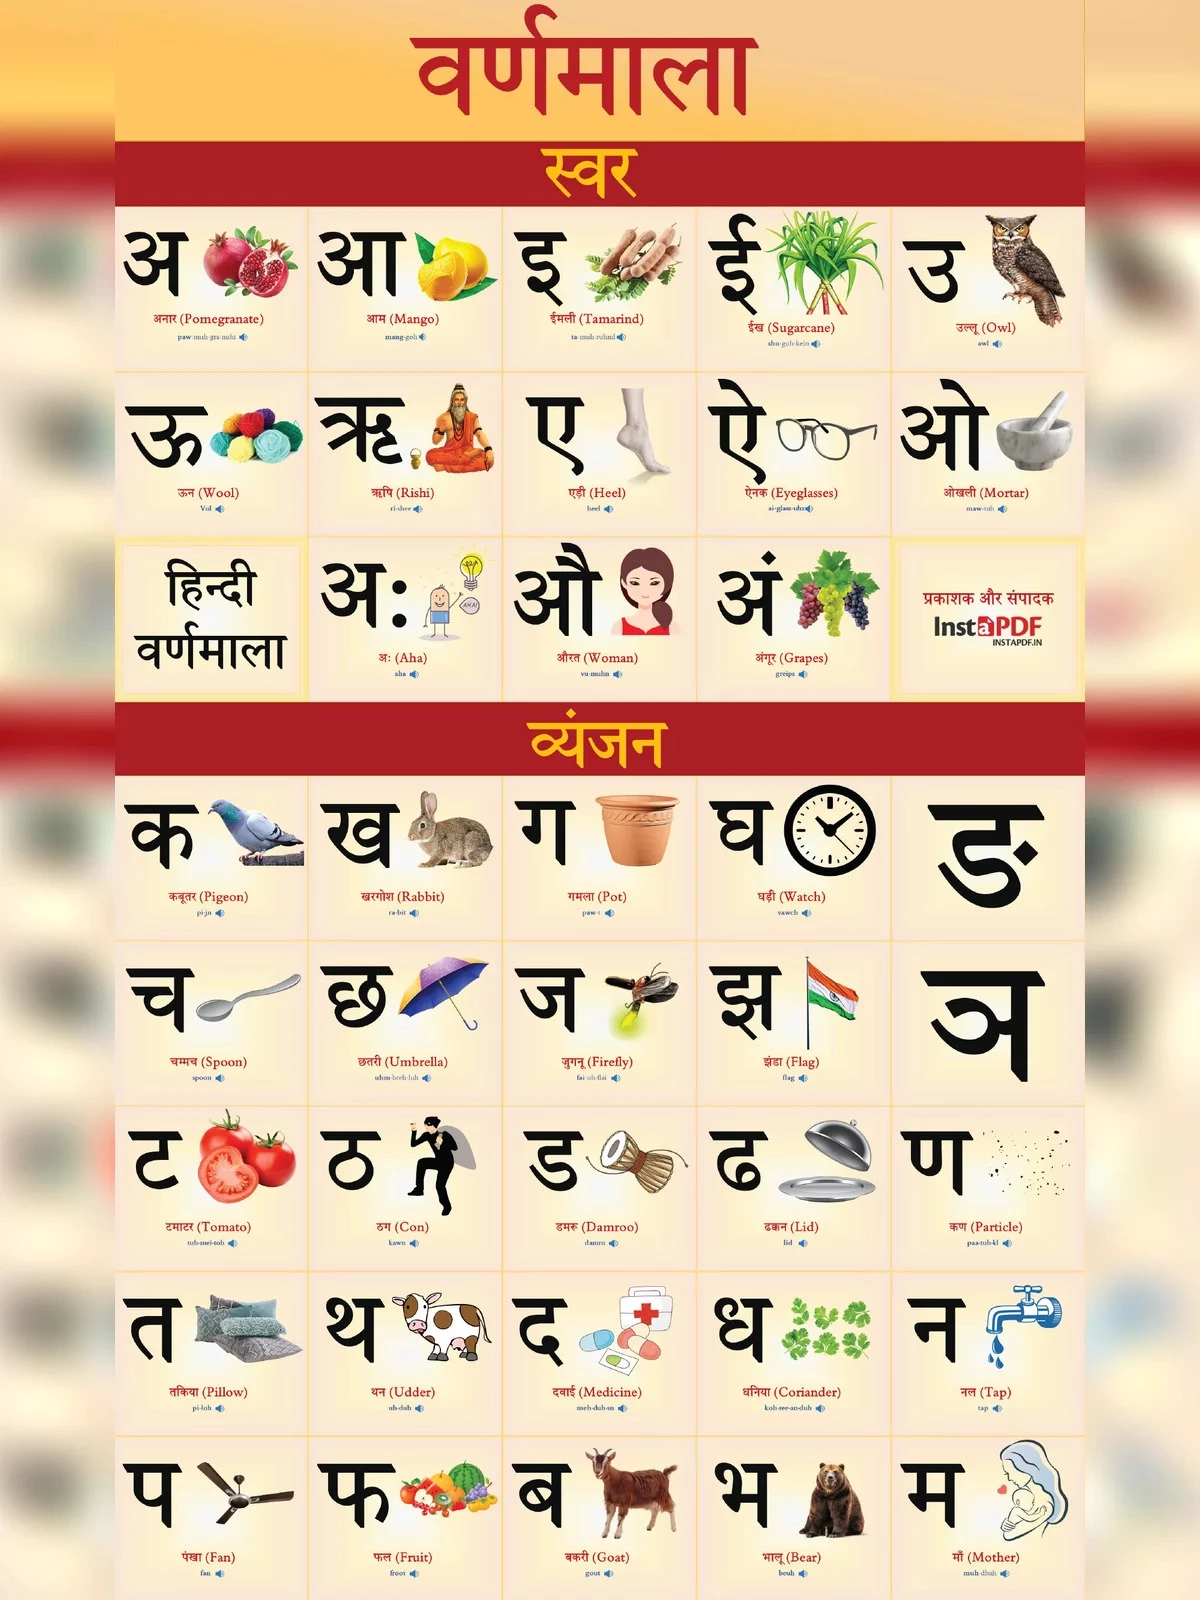 हिन्दी वर्णमाला चार्ट (Hindi Varnamala Chart)